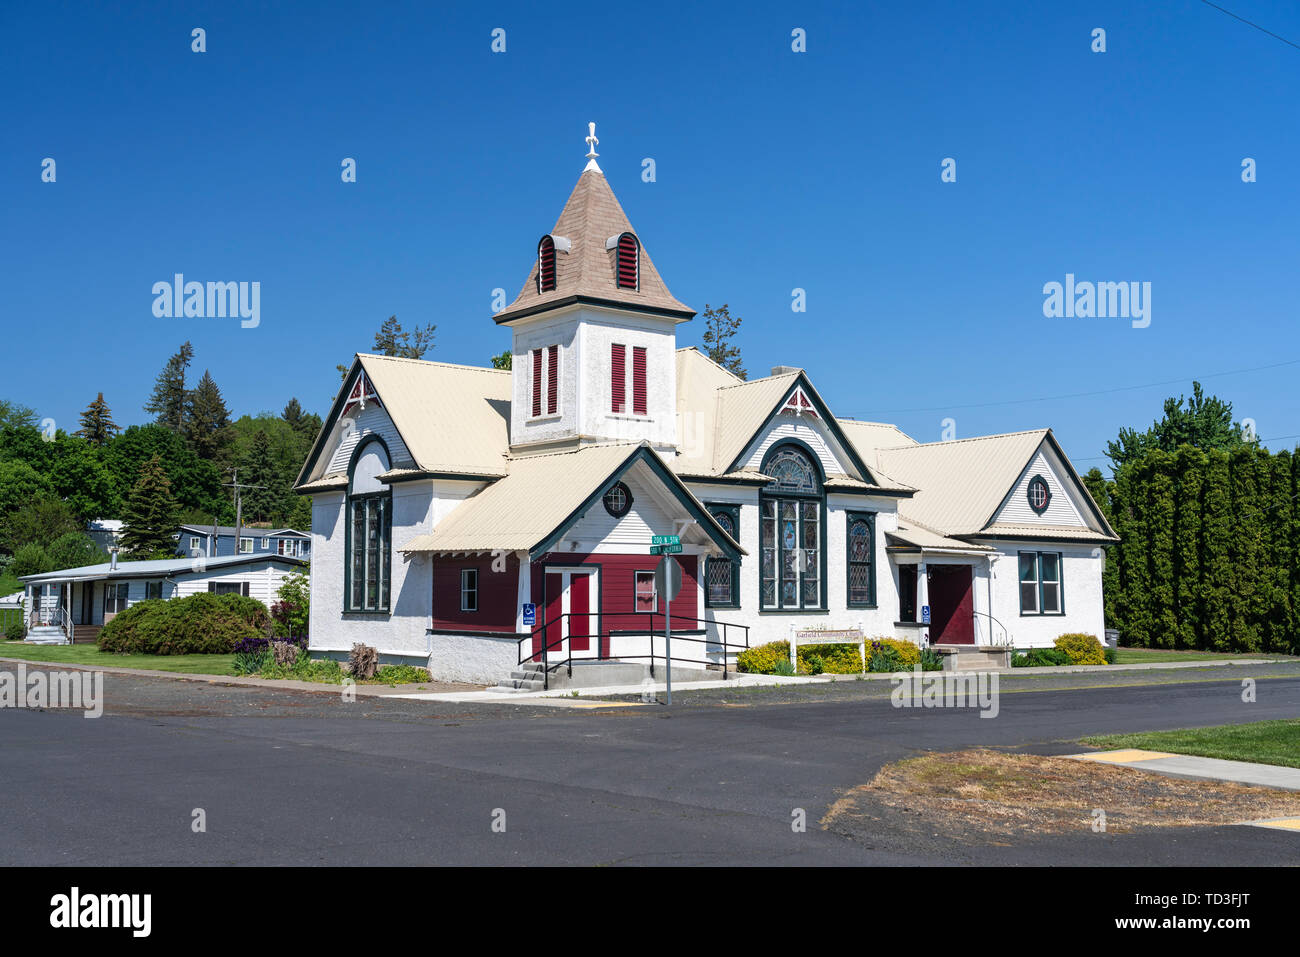 The Garfield Community Church in Garfield, Palouse, Washington, USA. Stock Photo